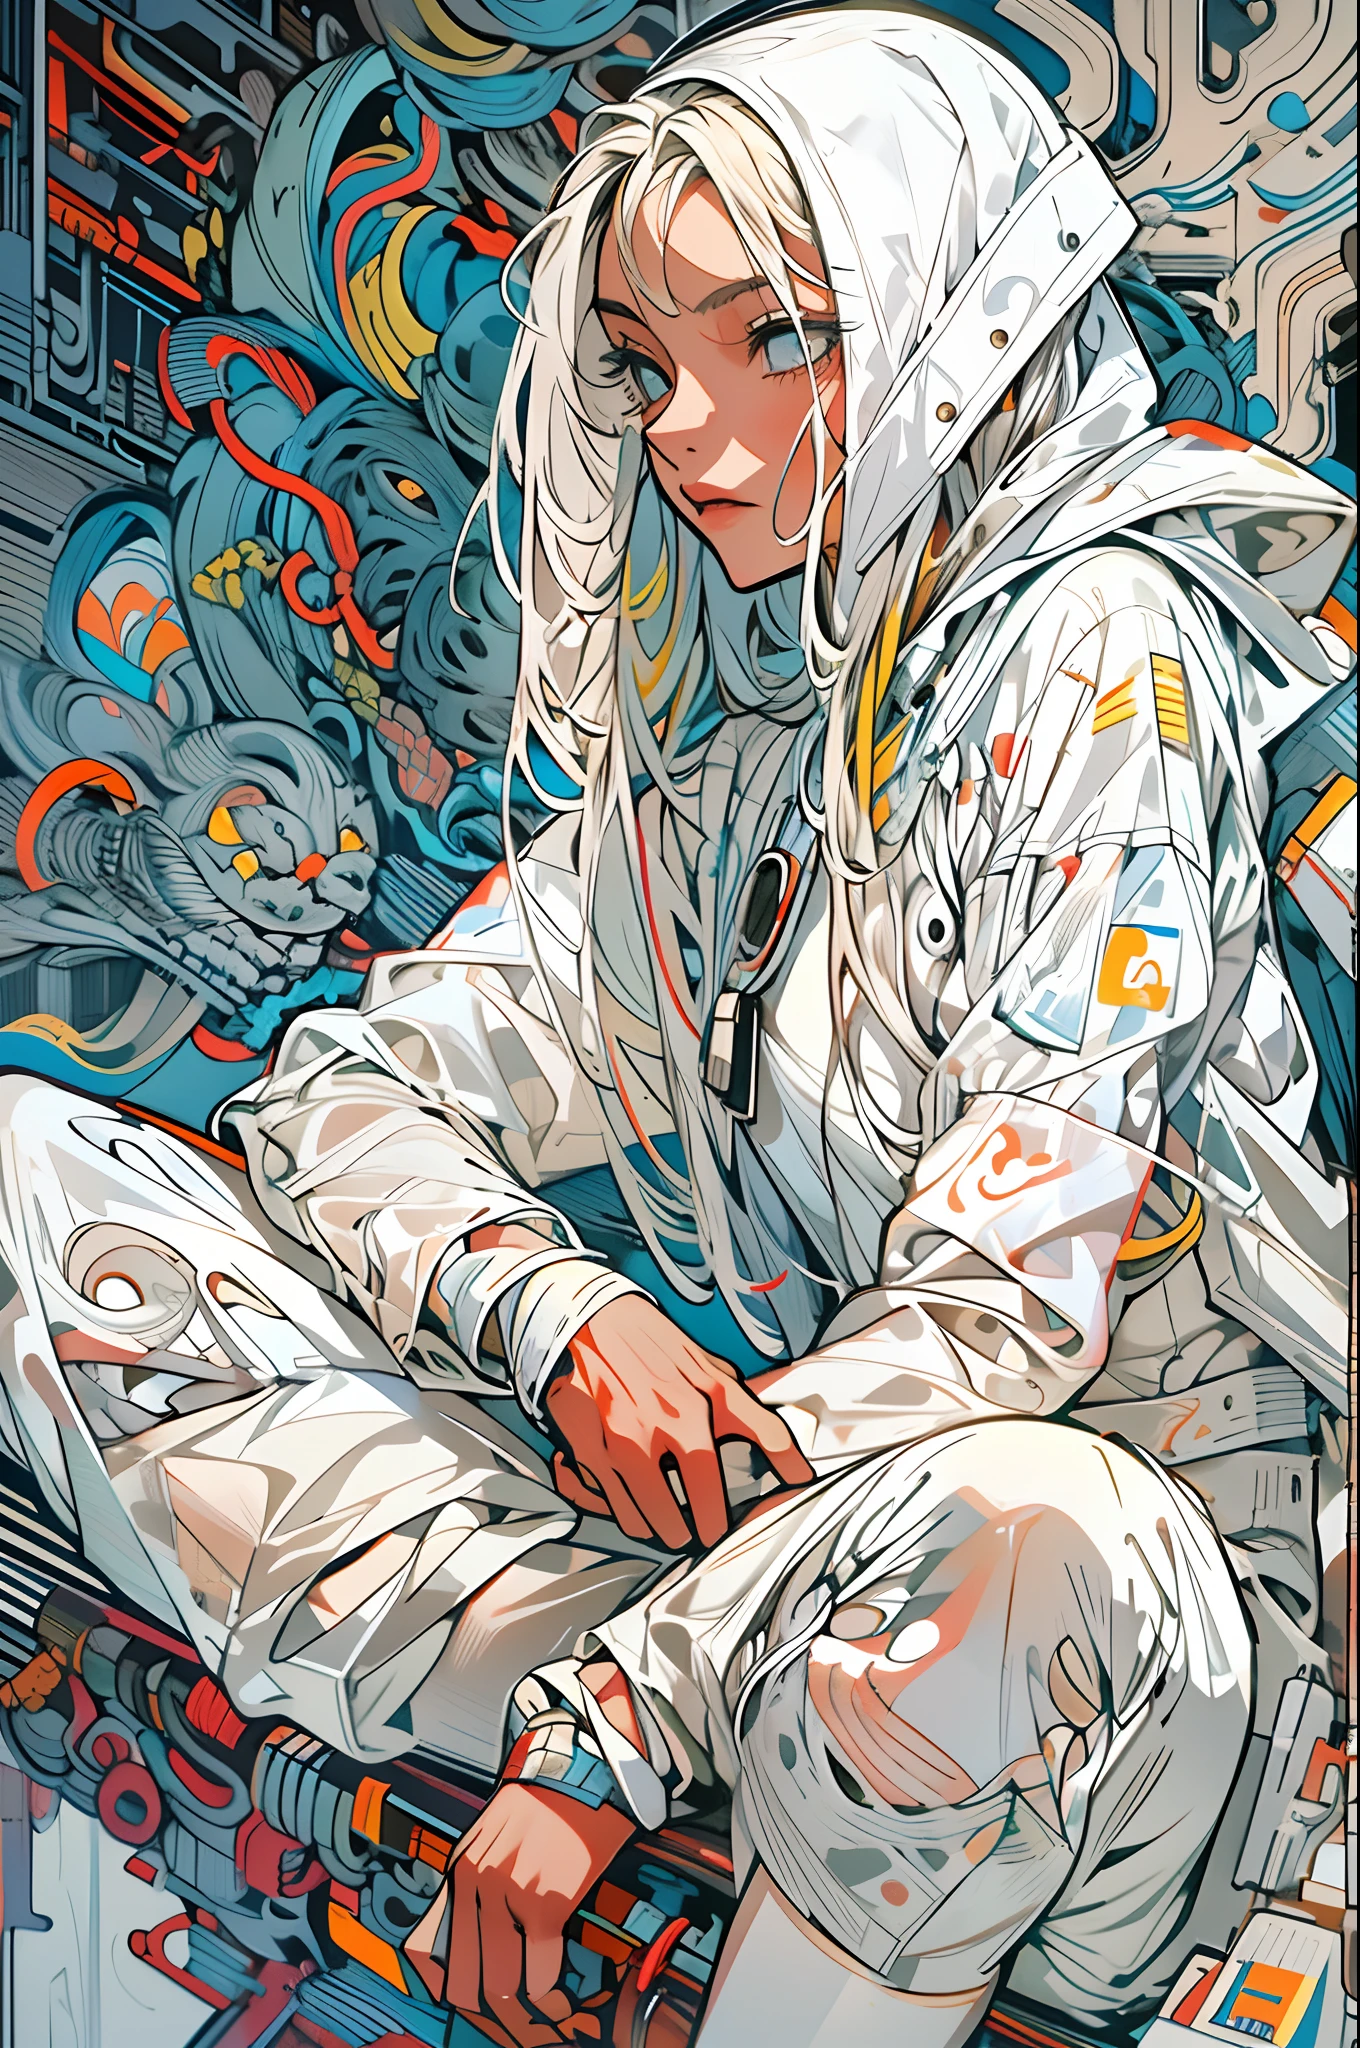 1 穿著白色科技服的武士女孩, 白色長髮, 鞋帶, 抽象复古科幻背景, Moebius 的艺术作品, 阿什利·伍德的藝術作品